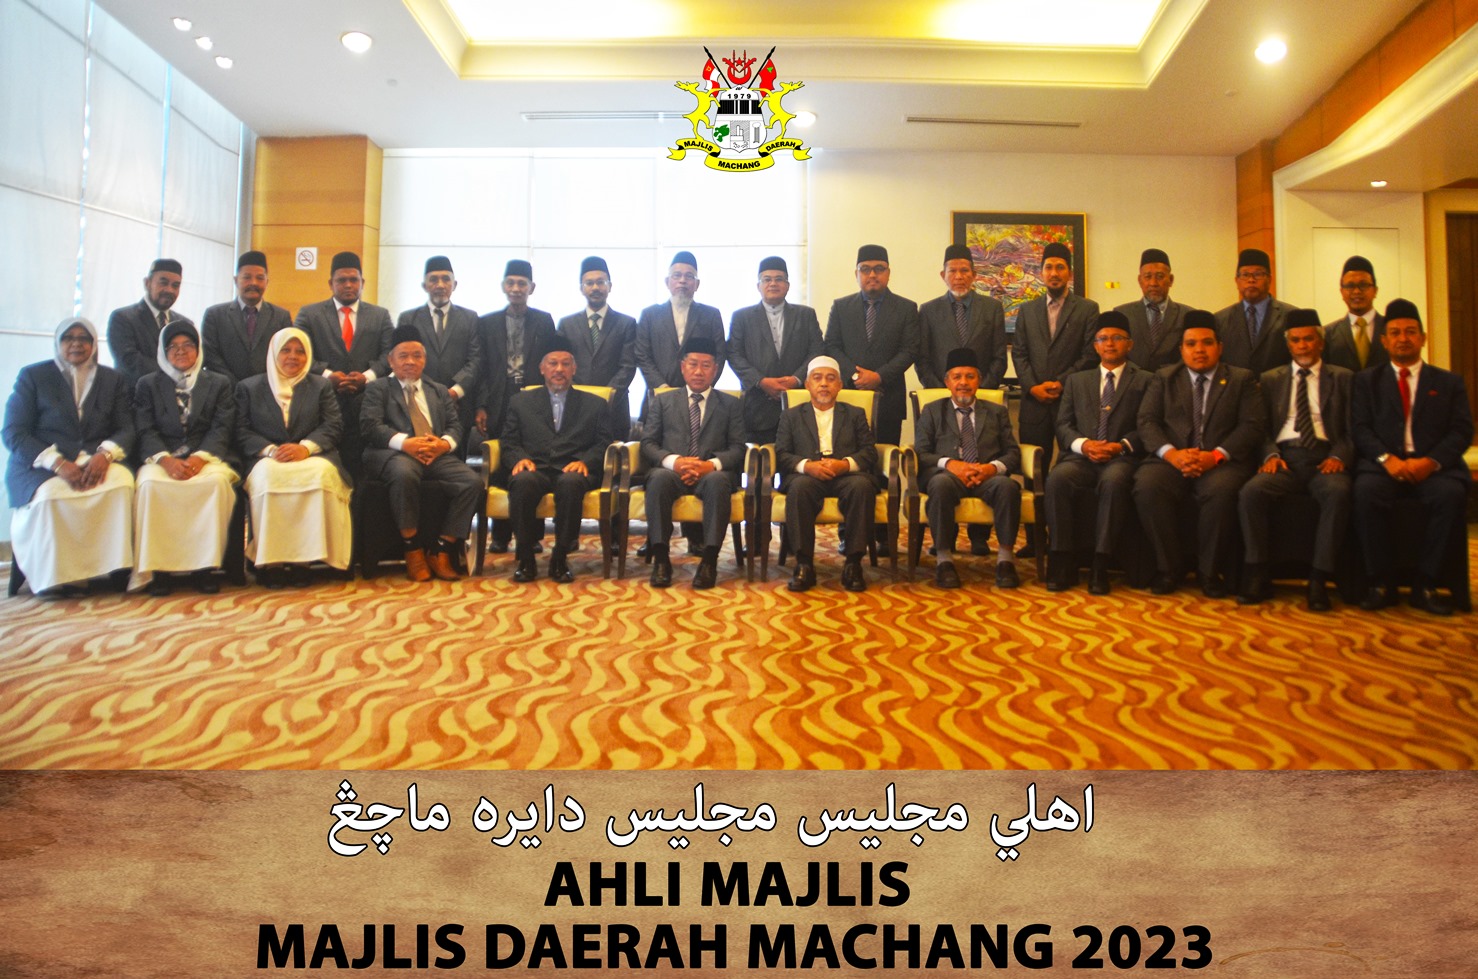 Ahli Majlis 2023